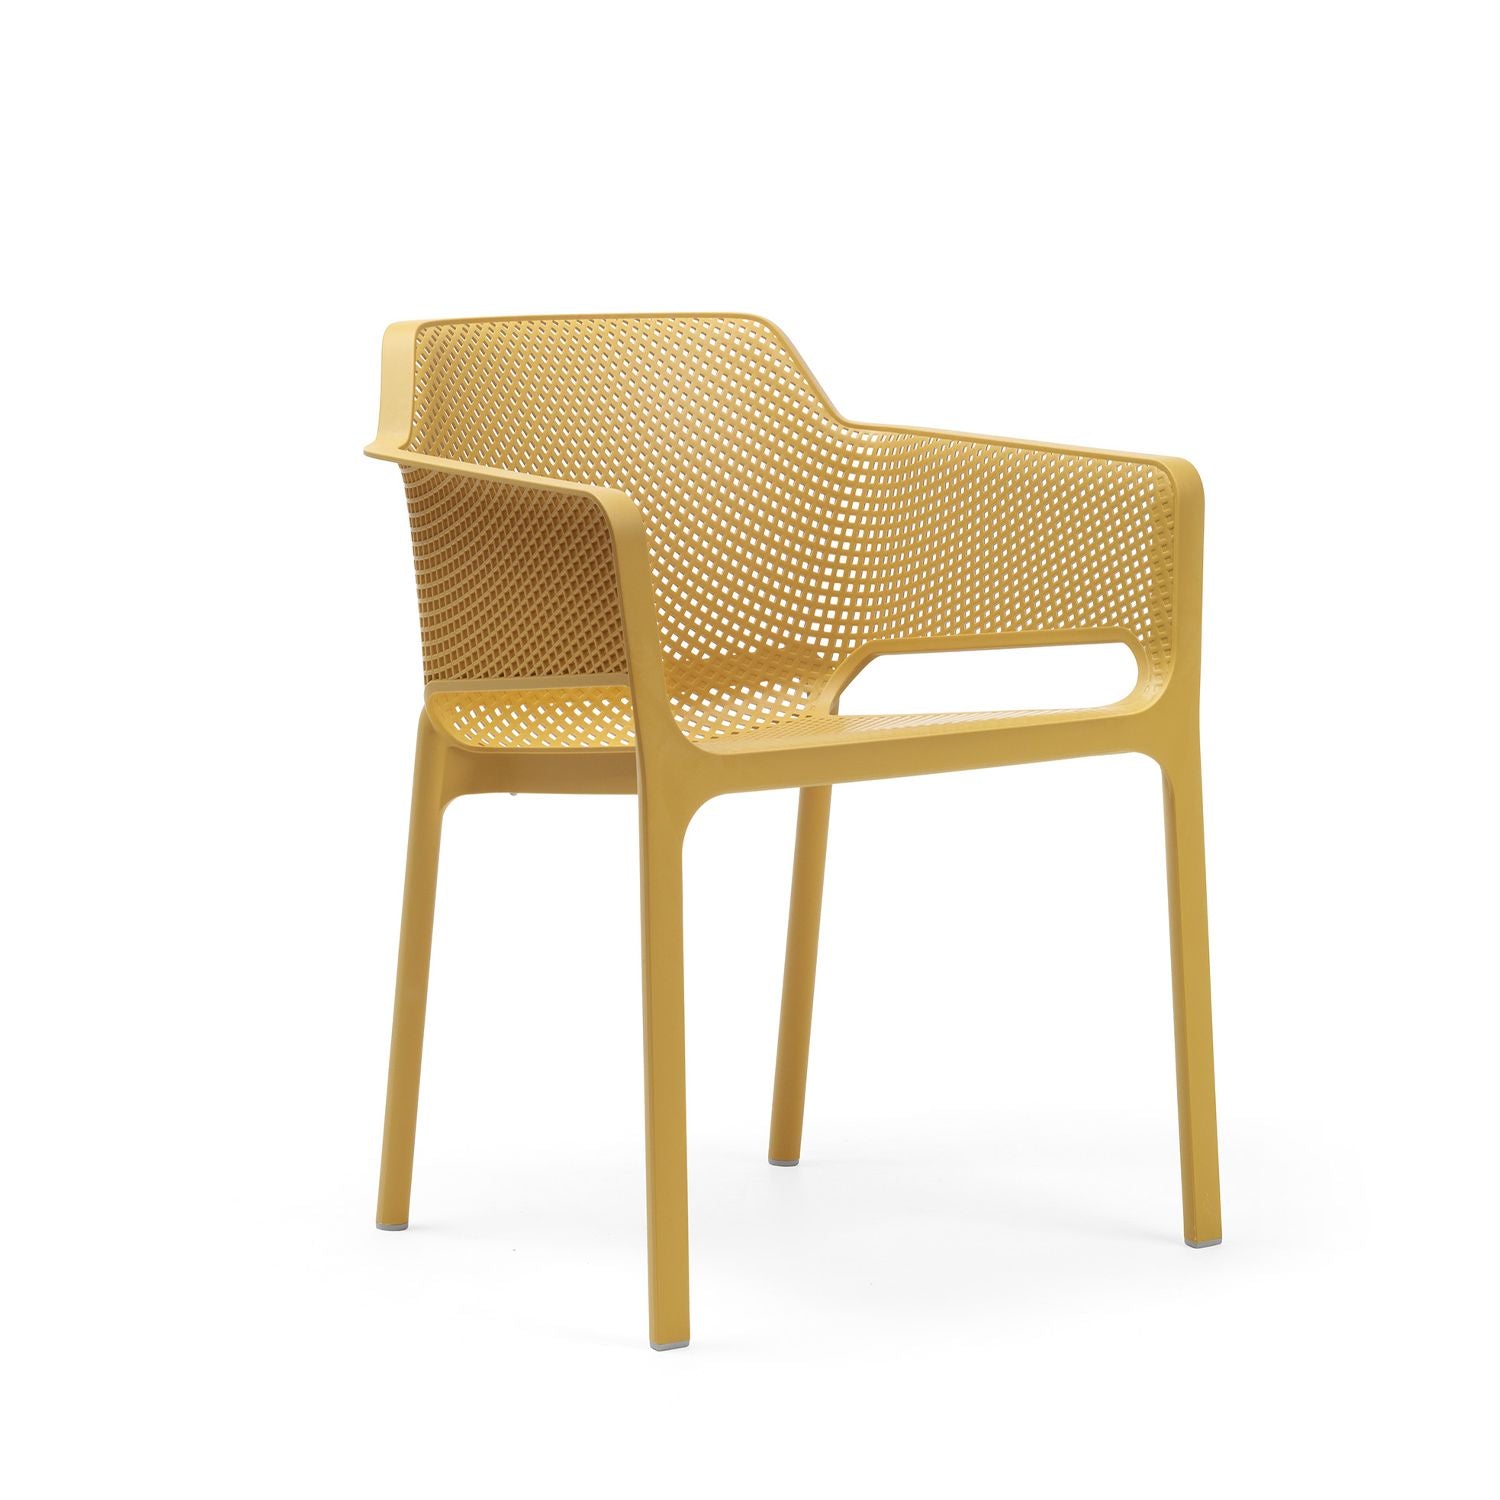 Net Garden Chair By Nardi - Set Of 6 - Mustard